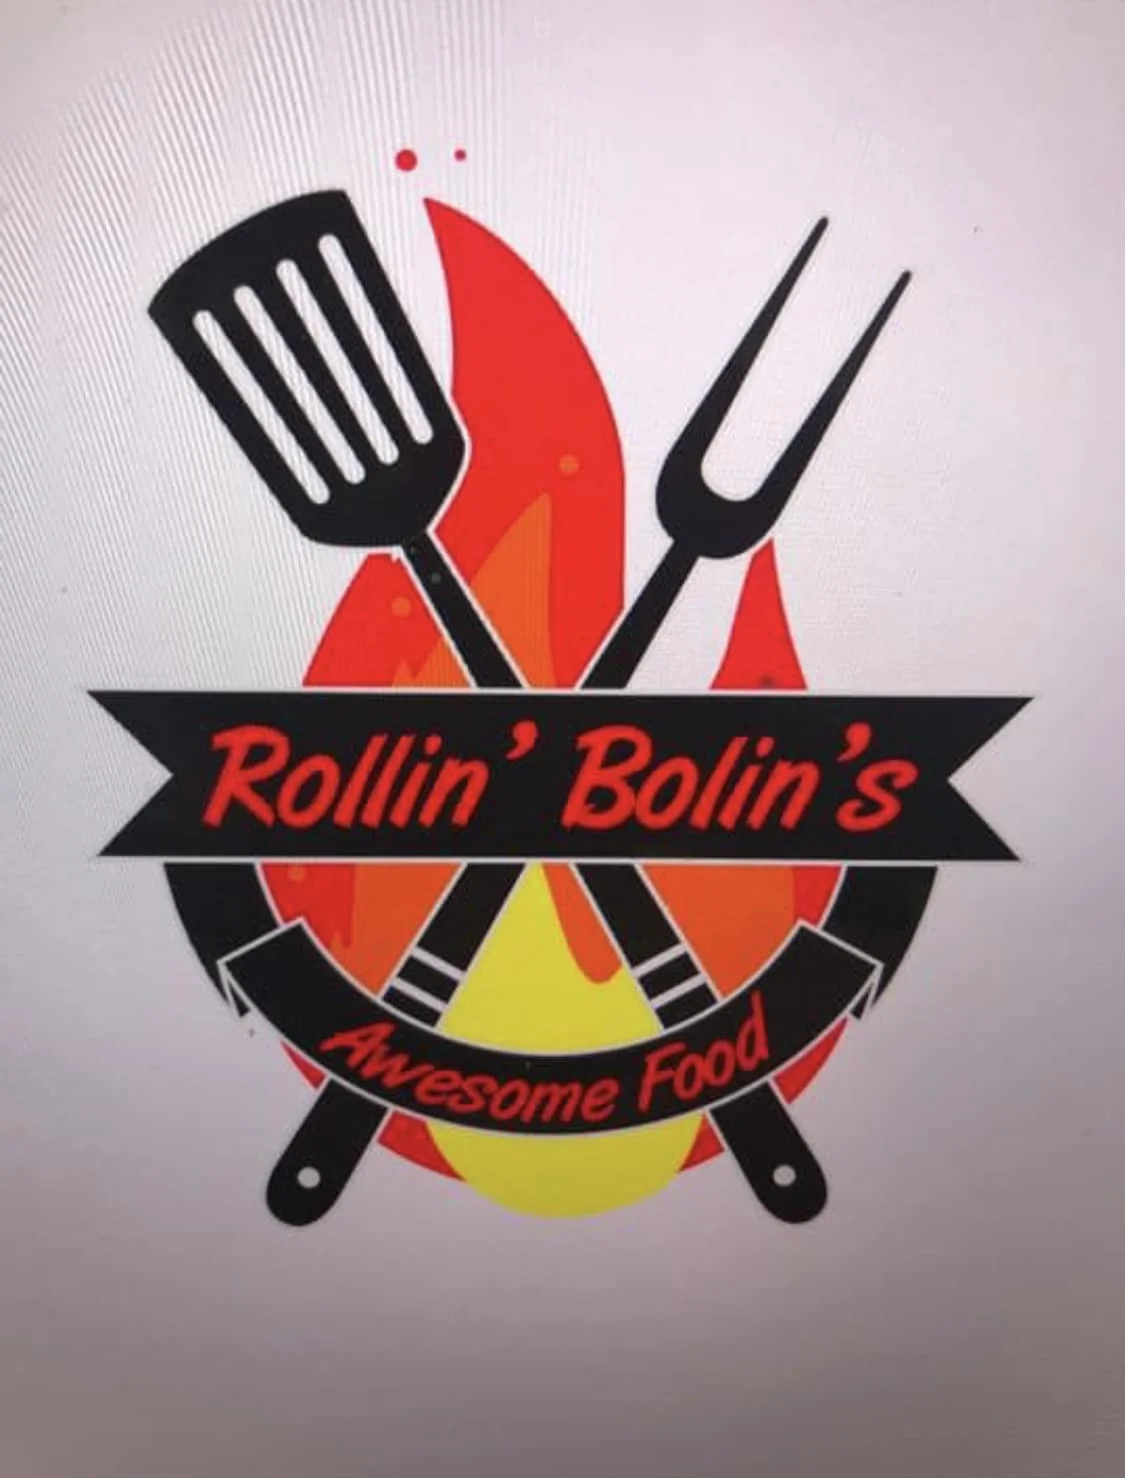 Rollin' Bolin's